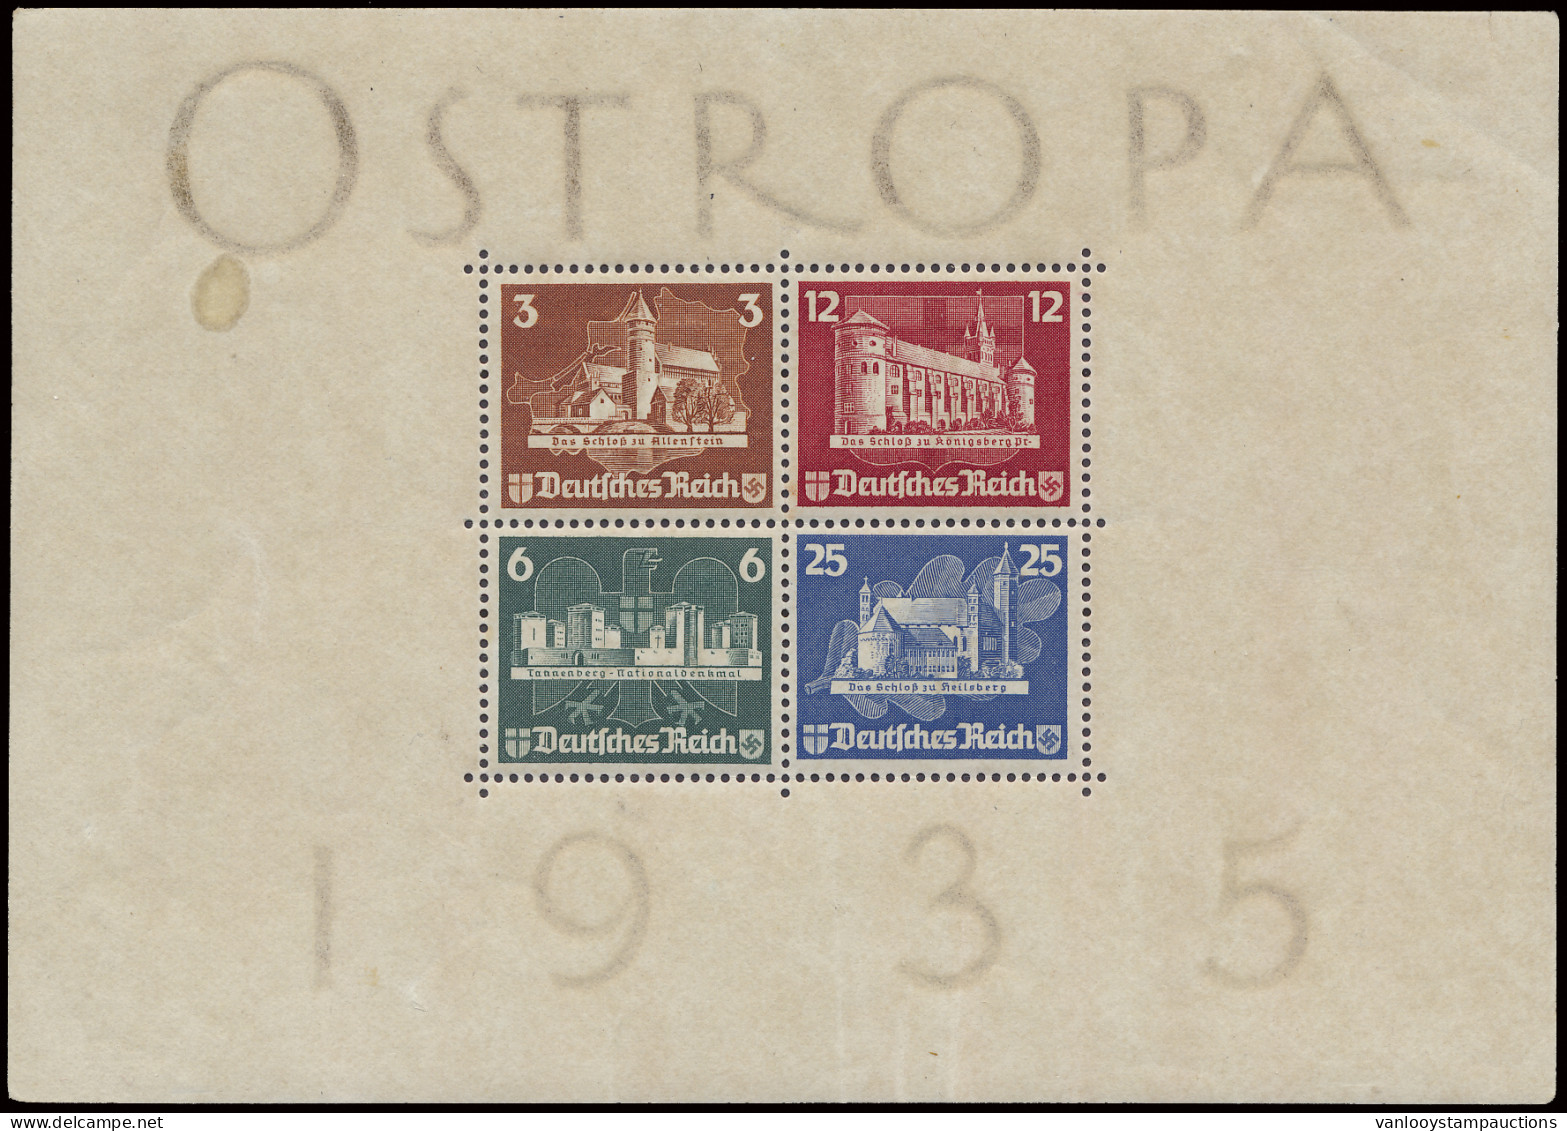 * BL 3 (Mi.) 1935 - Ostropa Met Originele Bruine Gom En Sporen Van Scharnier, Michel Vermeldt Alleen Blok Zonder Gom, M  - Blocks & Sheetlets